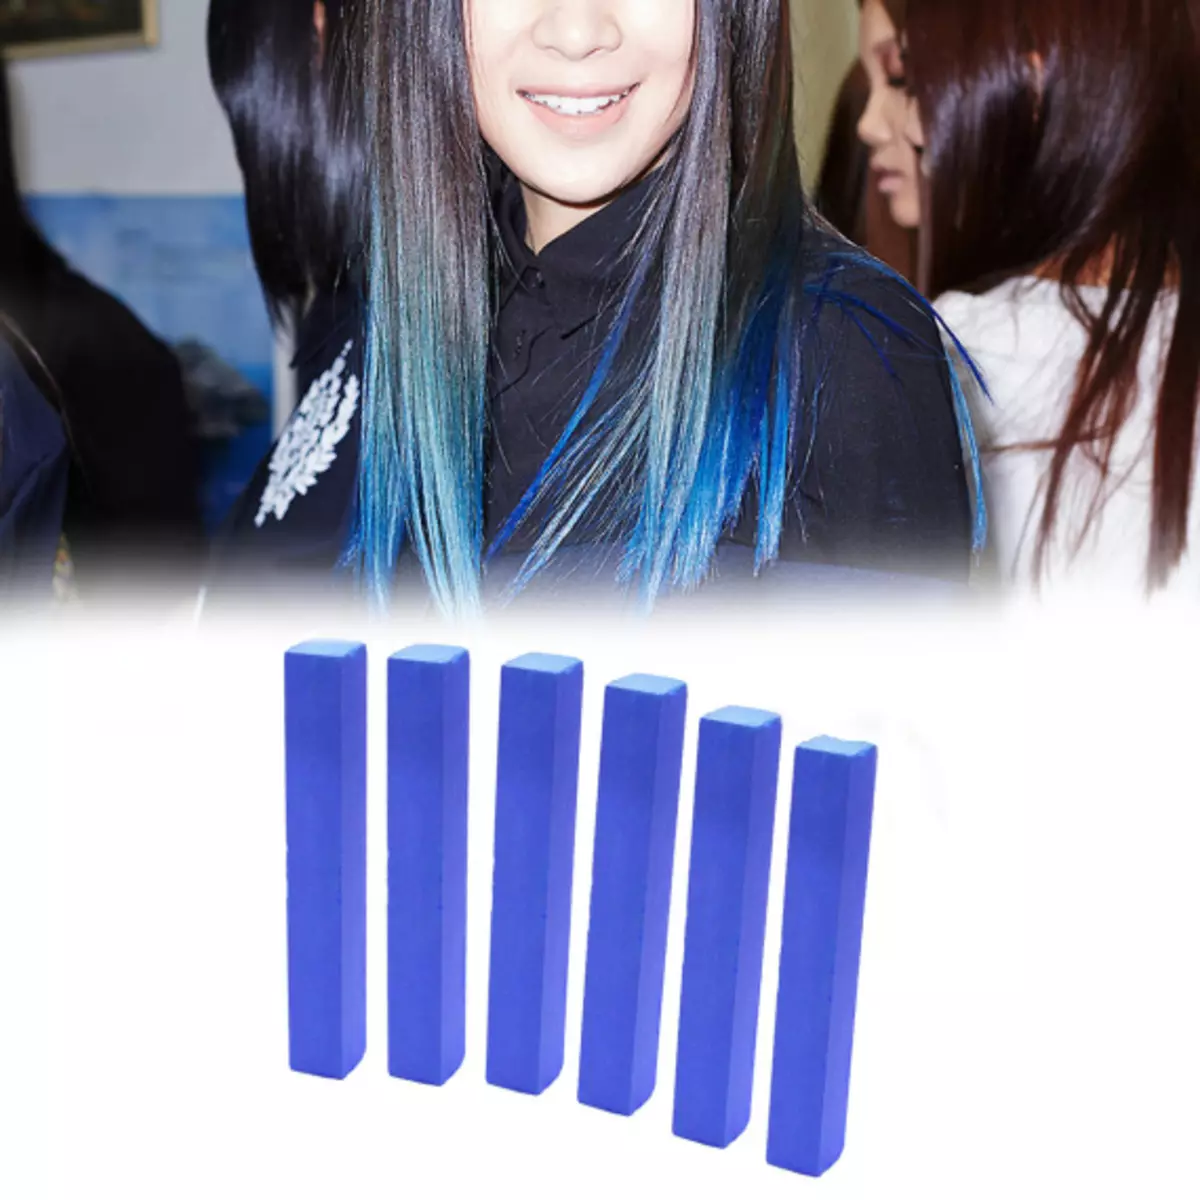 Vernice dei capelli blu: Panoramica delle pitture dei capelli resistenti con il tumpino blu, dal blu chiaro alle sfumature nere e blu 5402_36